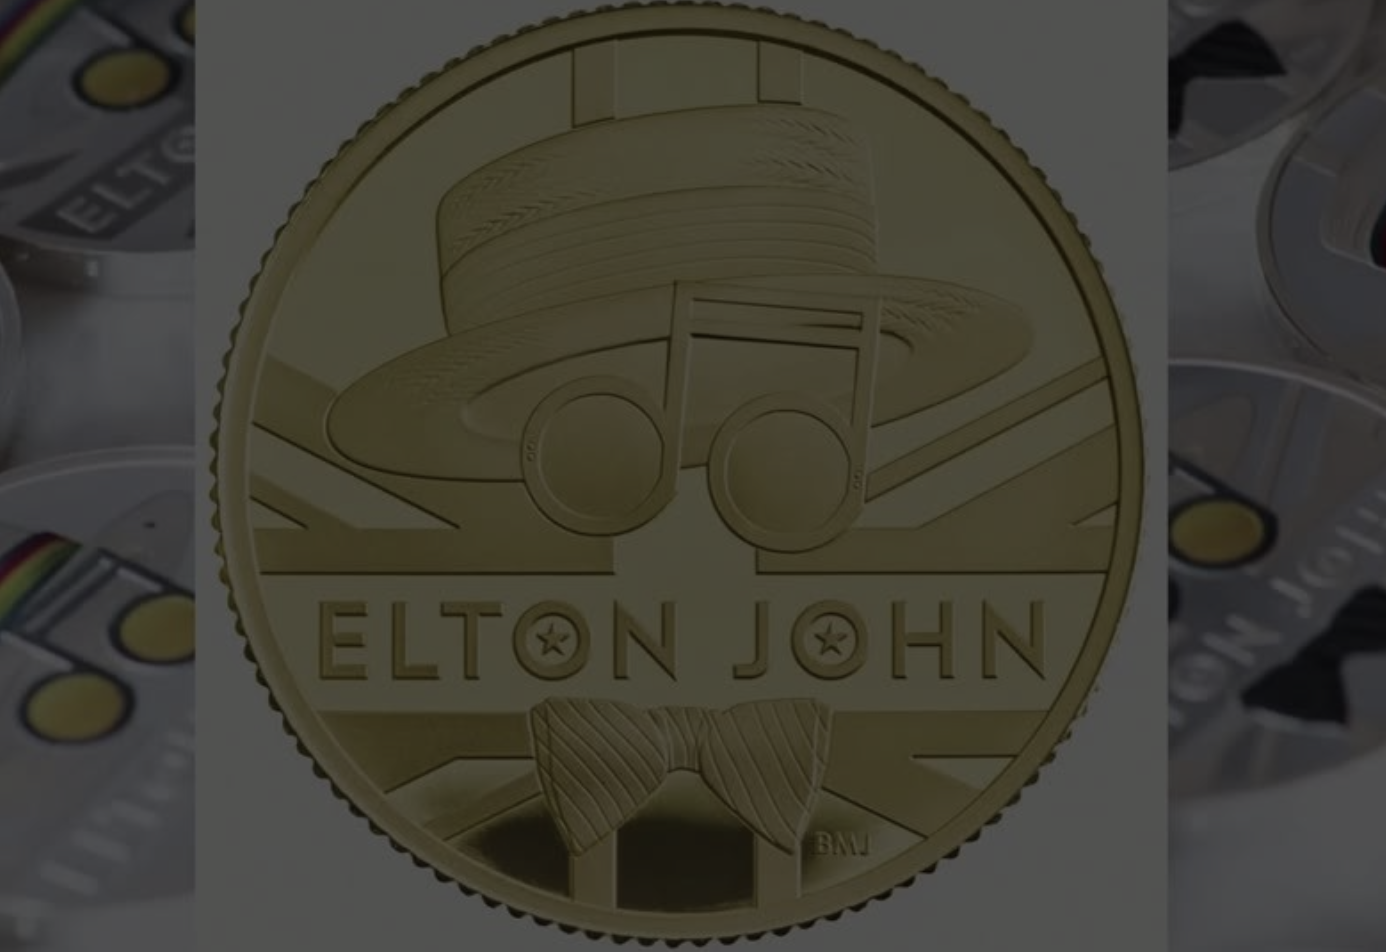 Elton John a devenit al doilea artist onorat de The Royal Mint – Monetăria Regală britanică după formația Queen